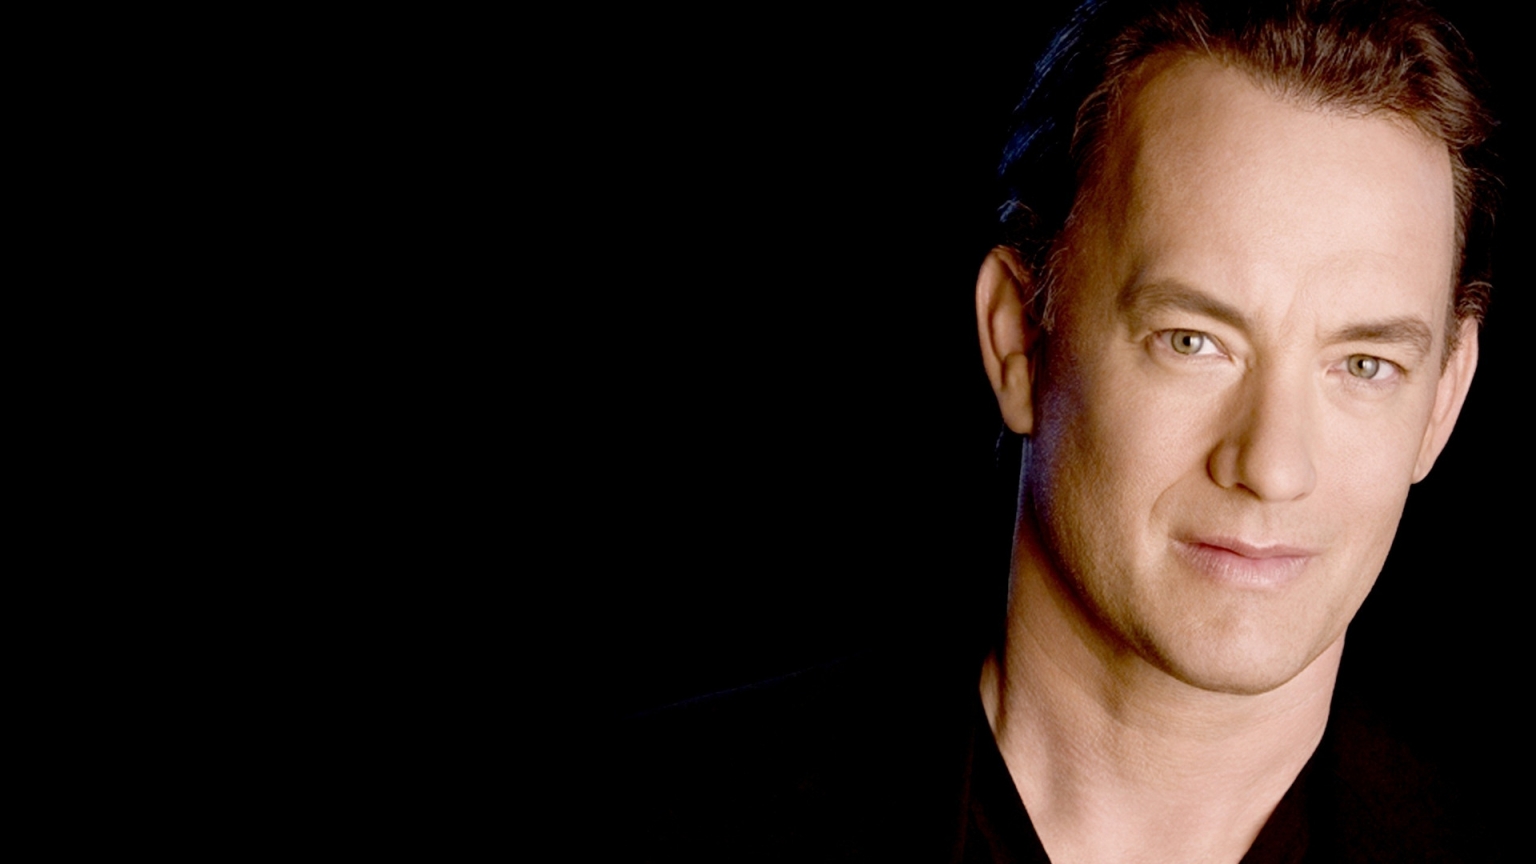 Tom Hanks for 1536 x 864 HDTV resolution